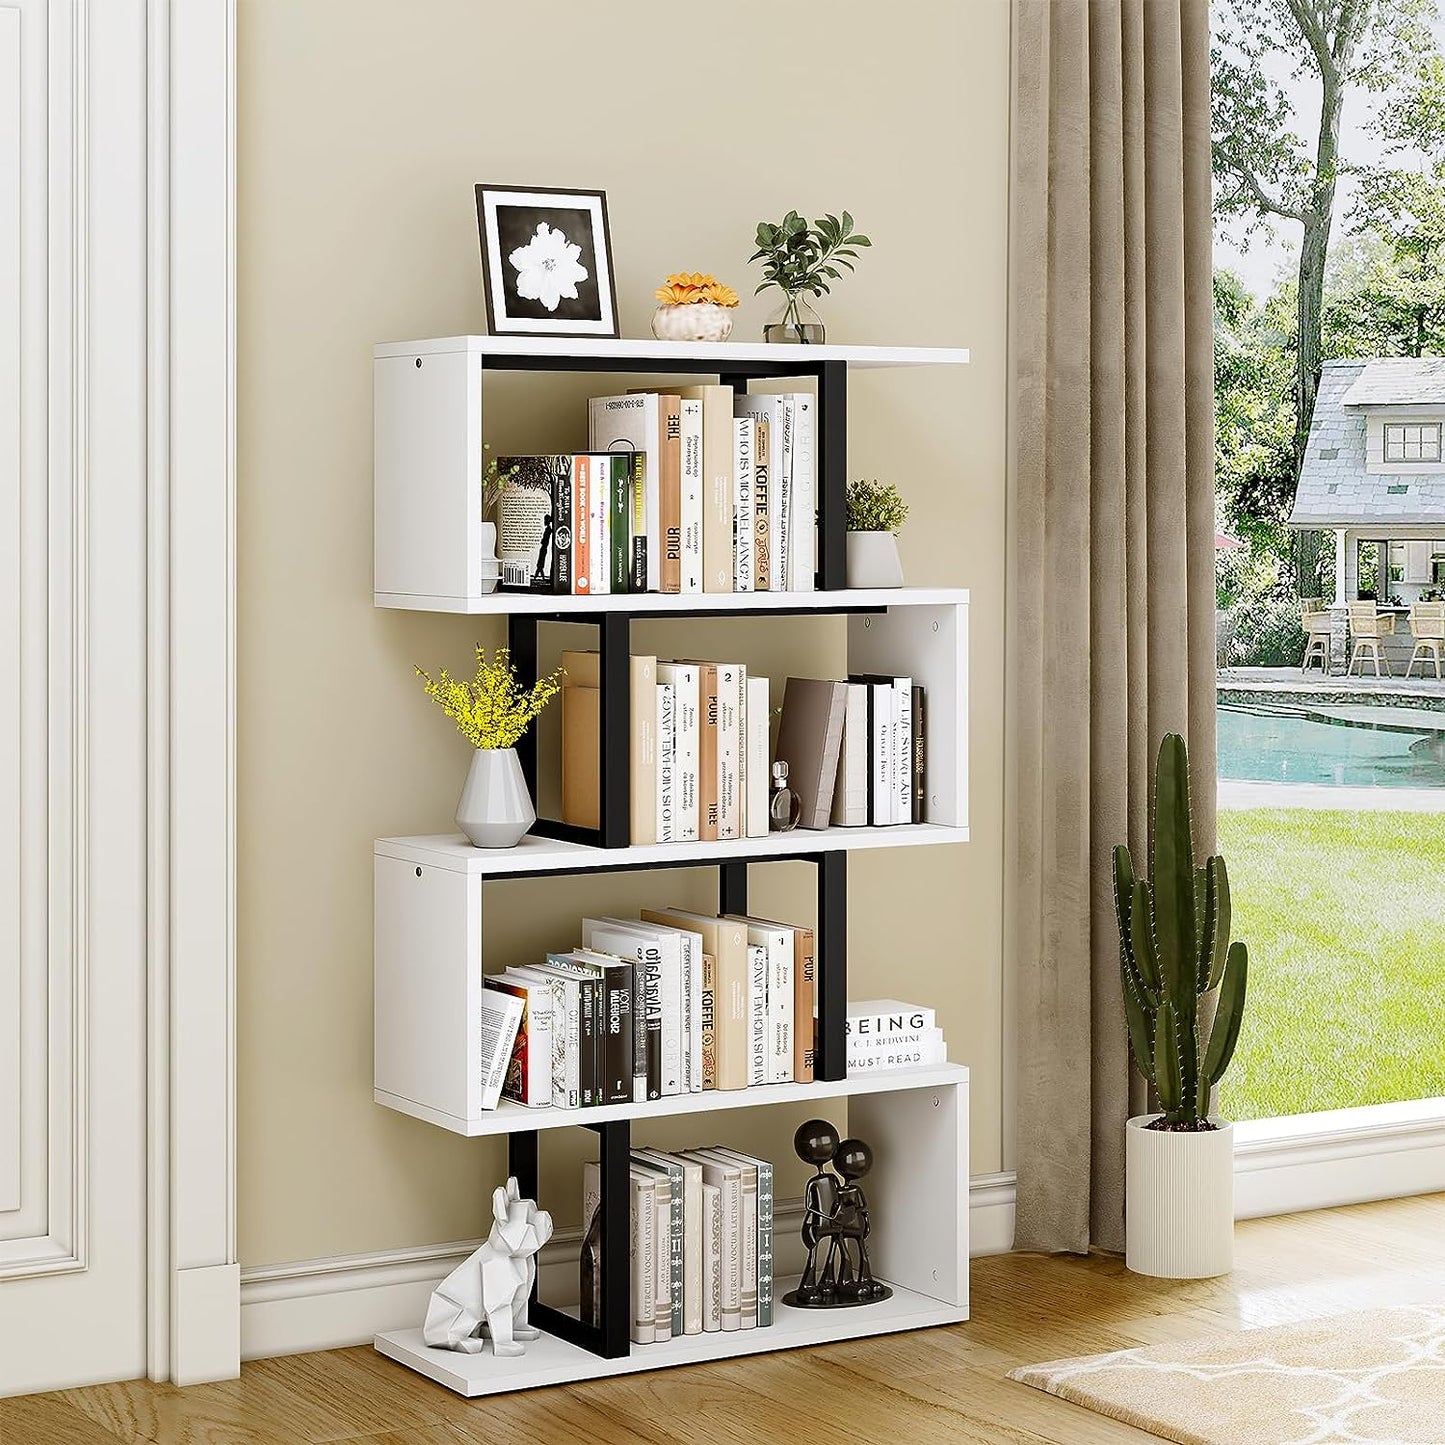 Modern Cream White 5-Tier S-Shaped Z-Shelf Bookshelf: Freestanding Multifunctional Decorative Storage Shelving for Living Room Home Office